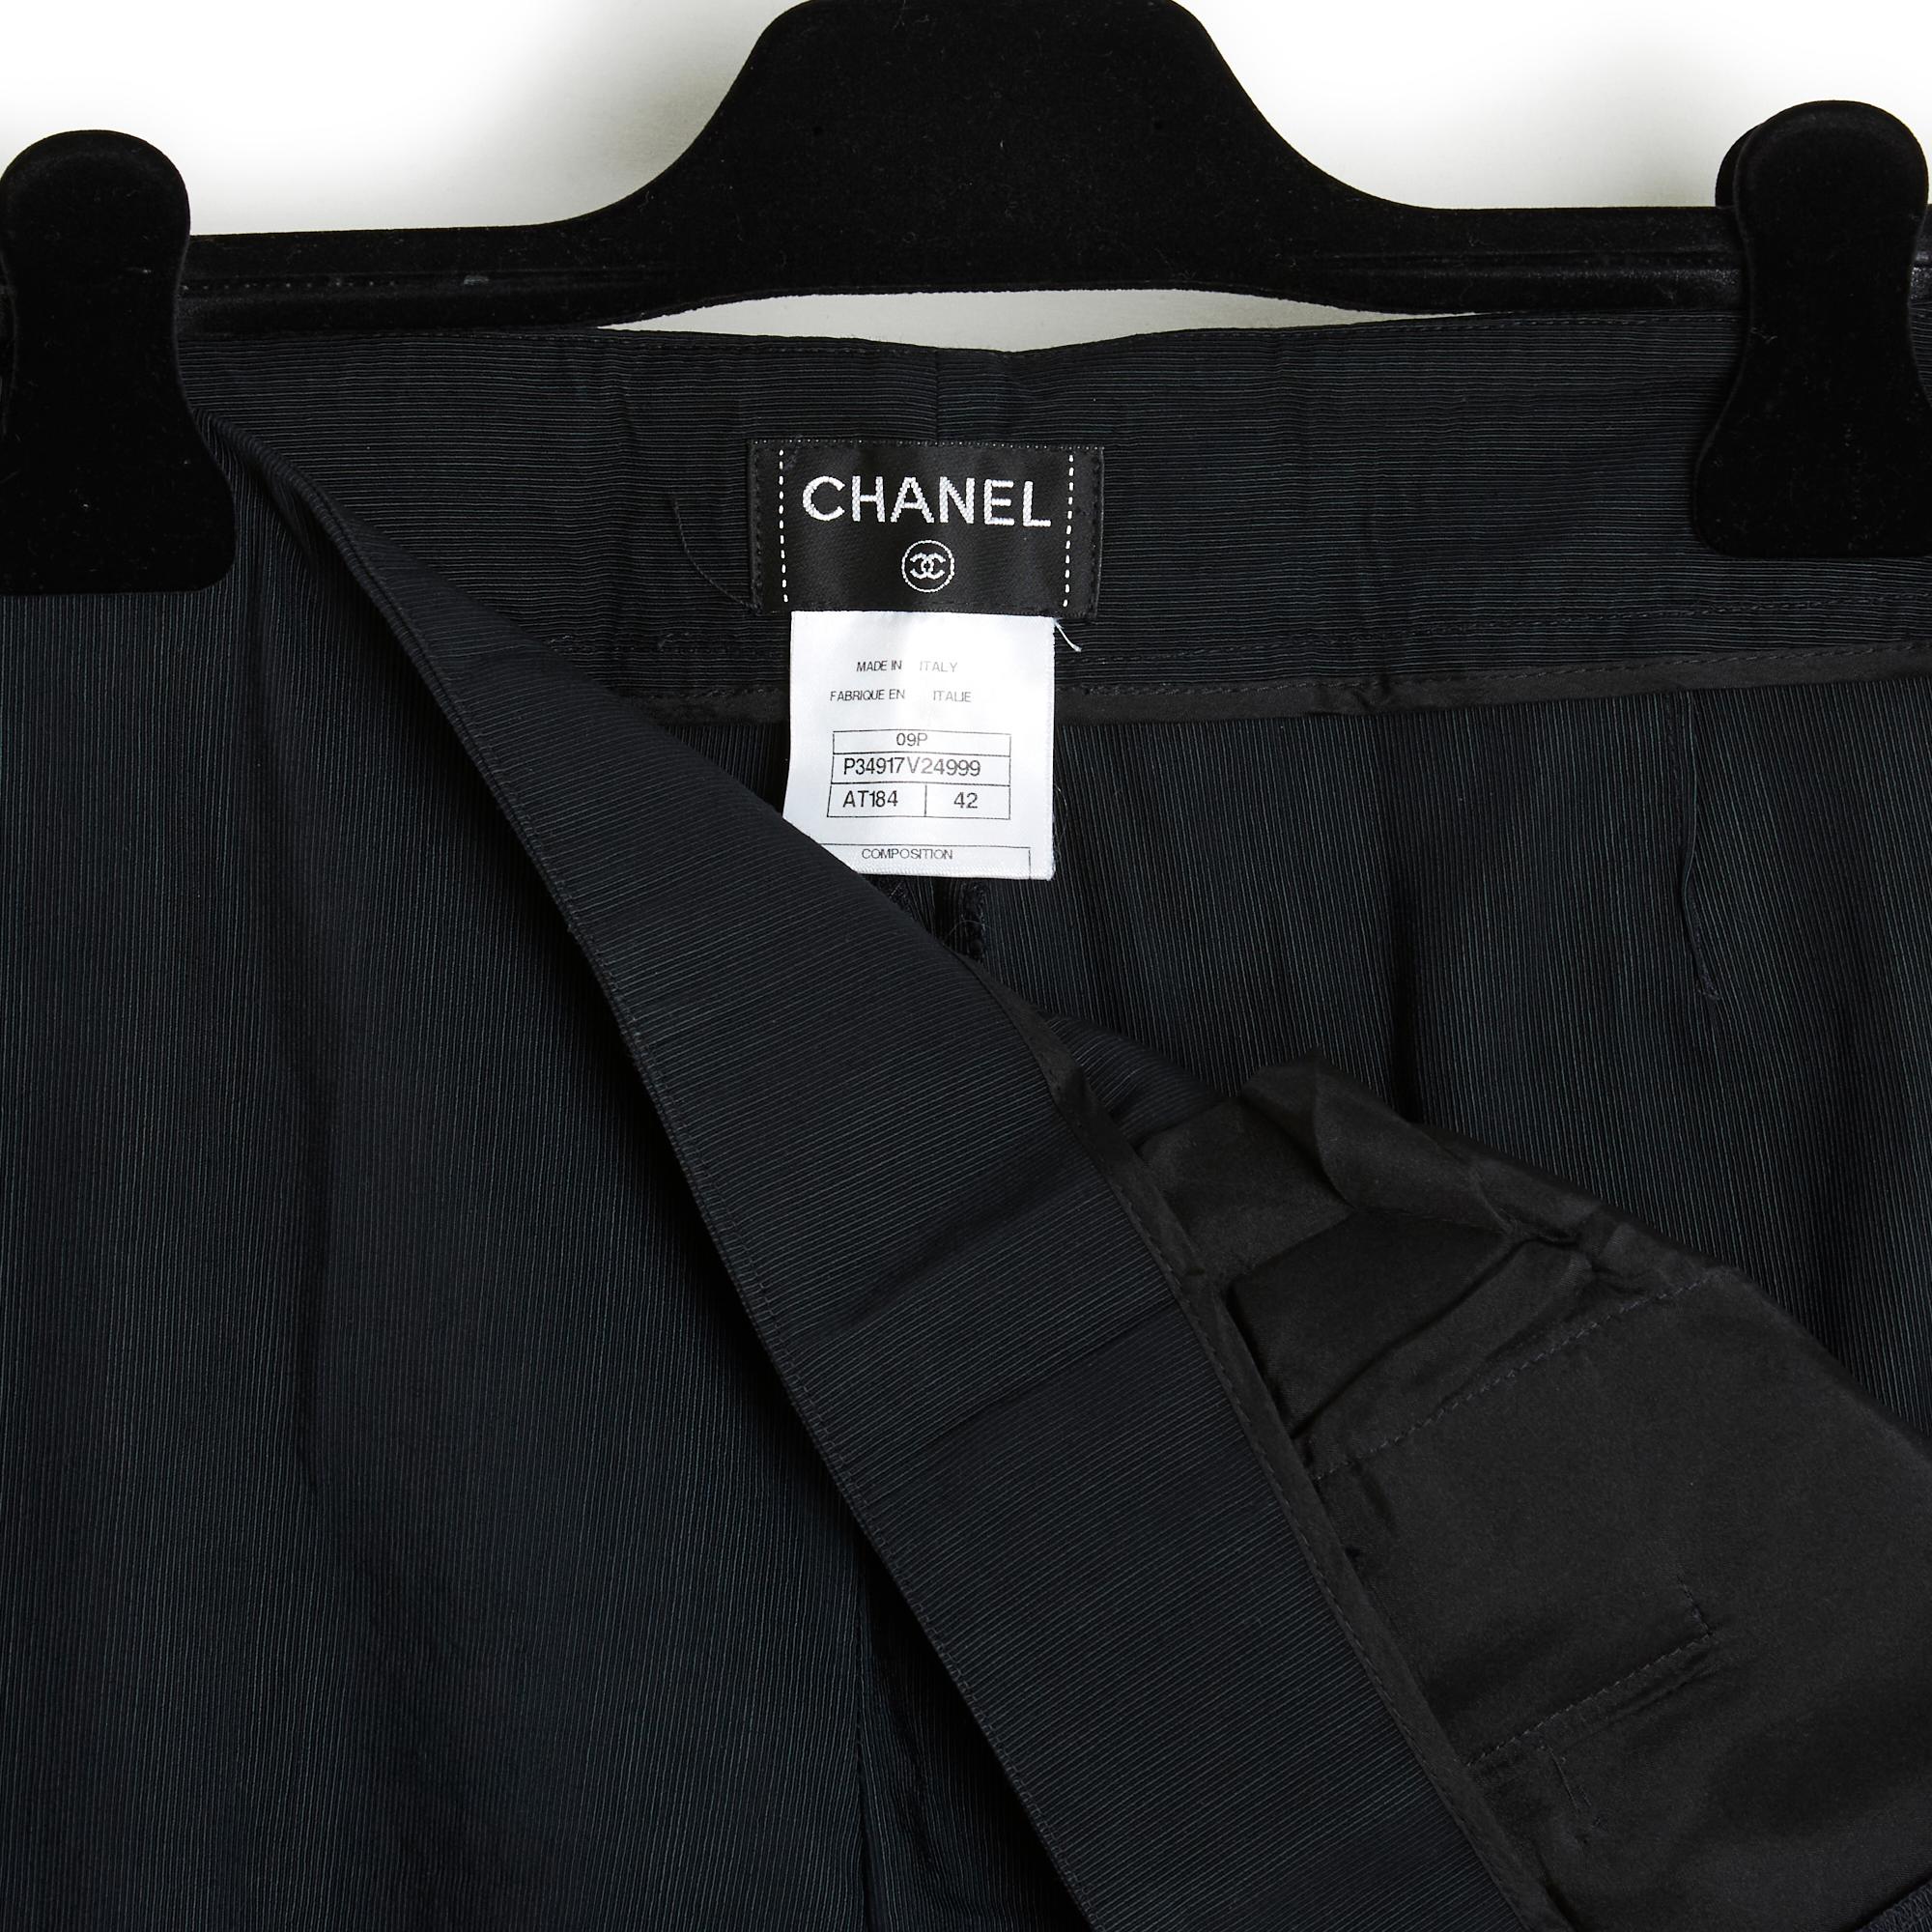 Women's or Men's SS2009 Chanel Dark Blue wide leg Pants FR40/42